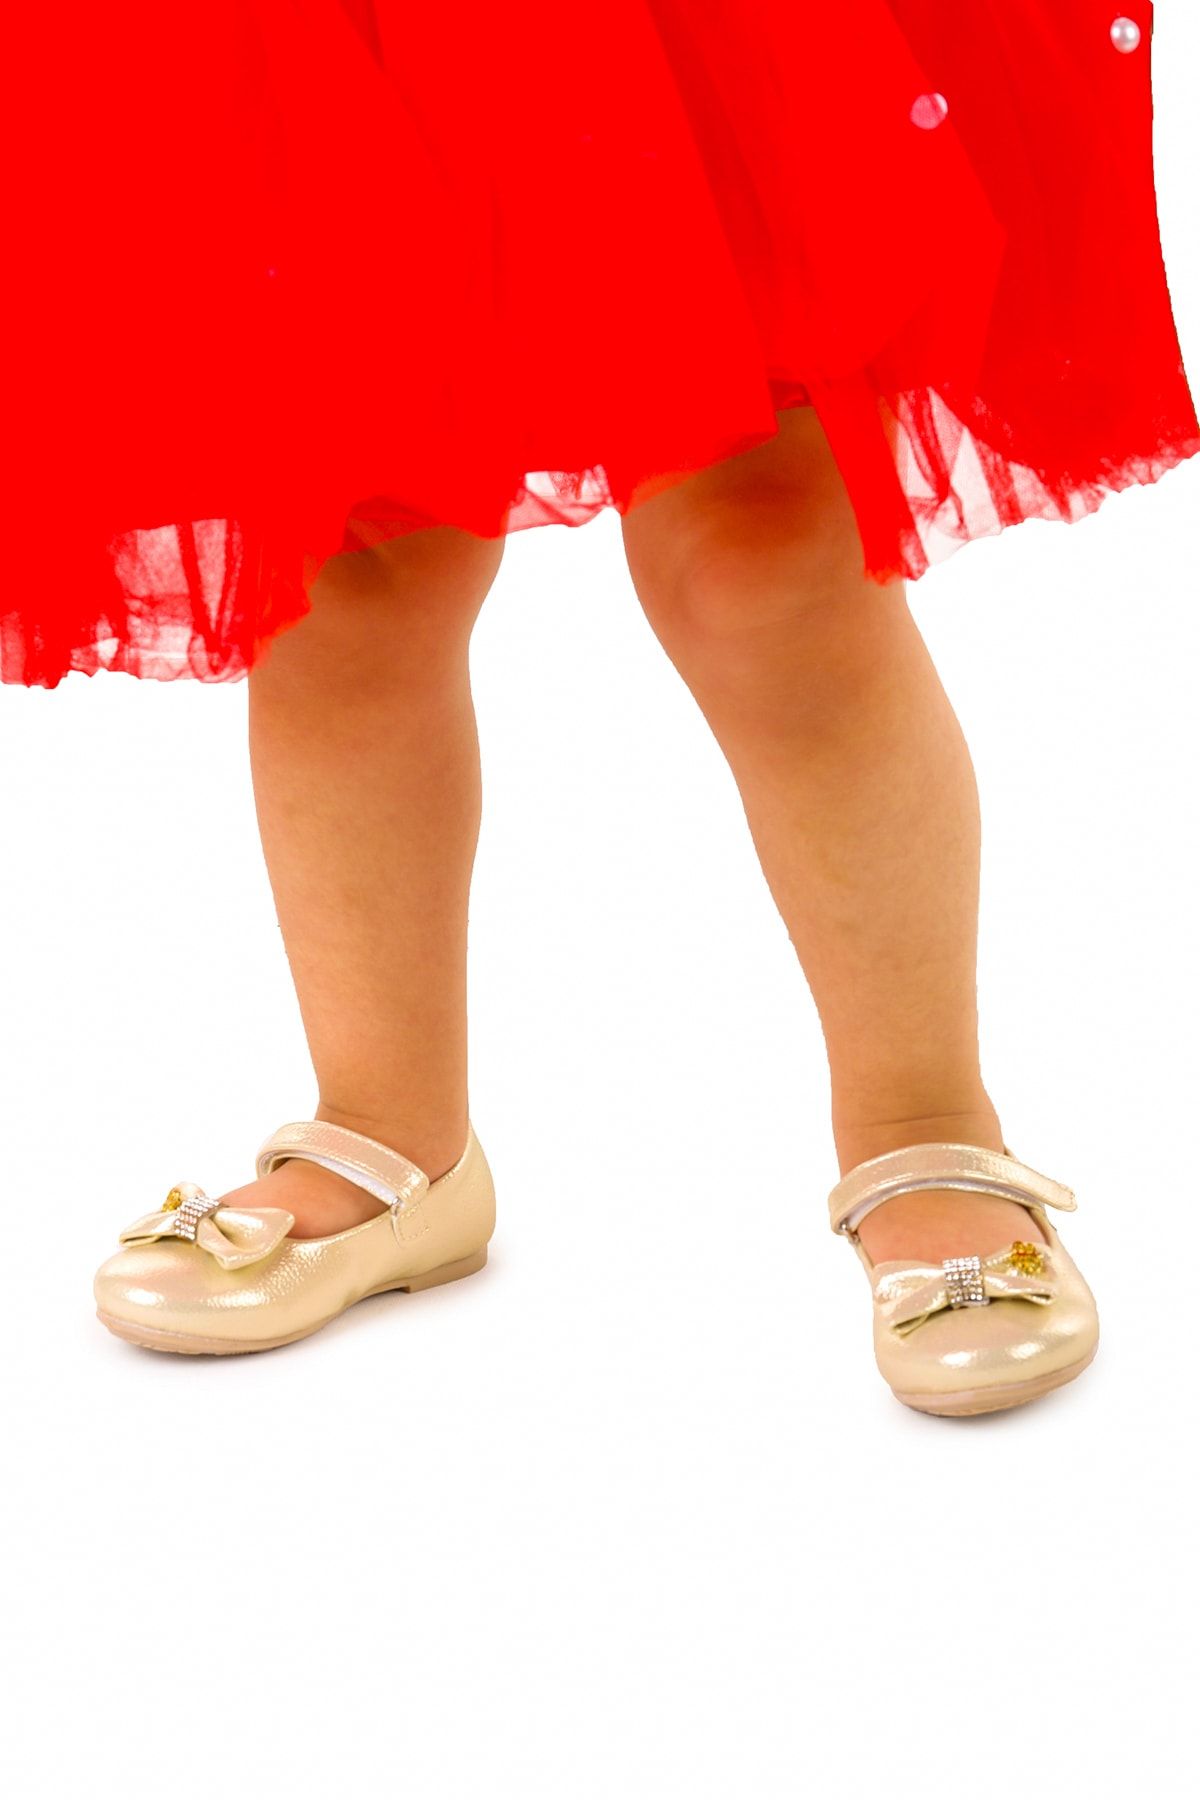 Kiko Kids Cırtlı Fiyonklu Kız Çocuk Babet Ayakkabı Ege 201 Vakko